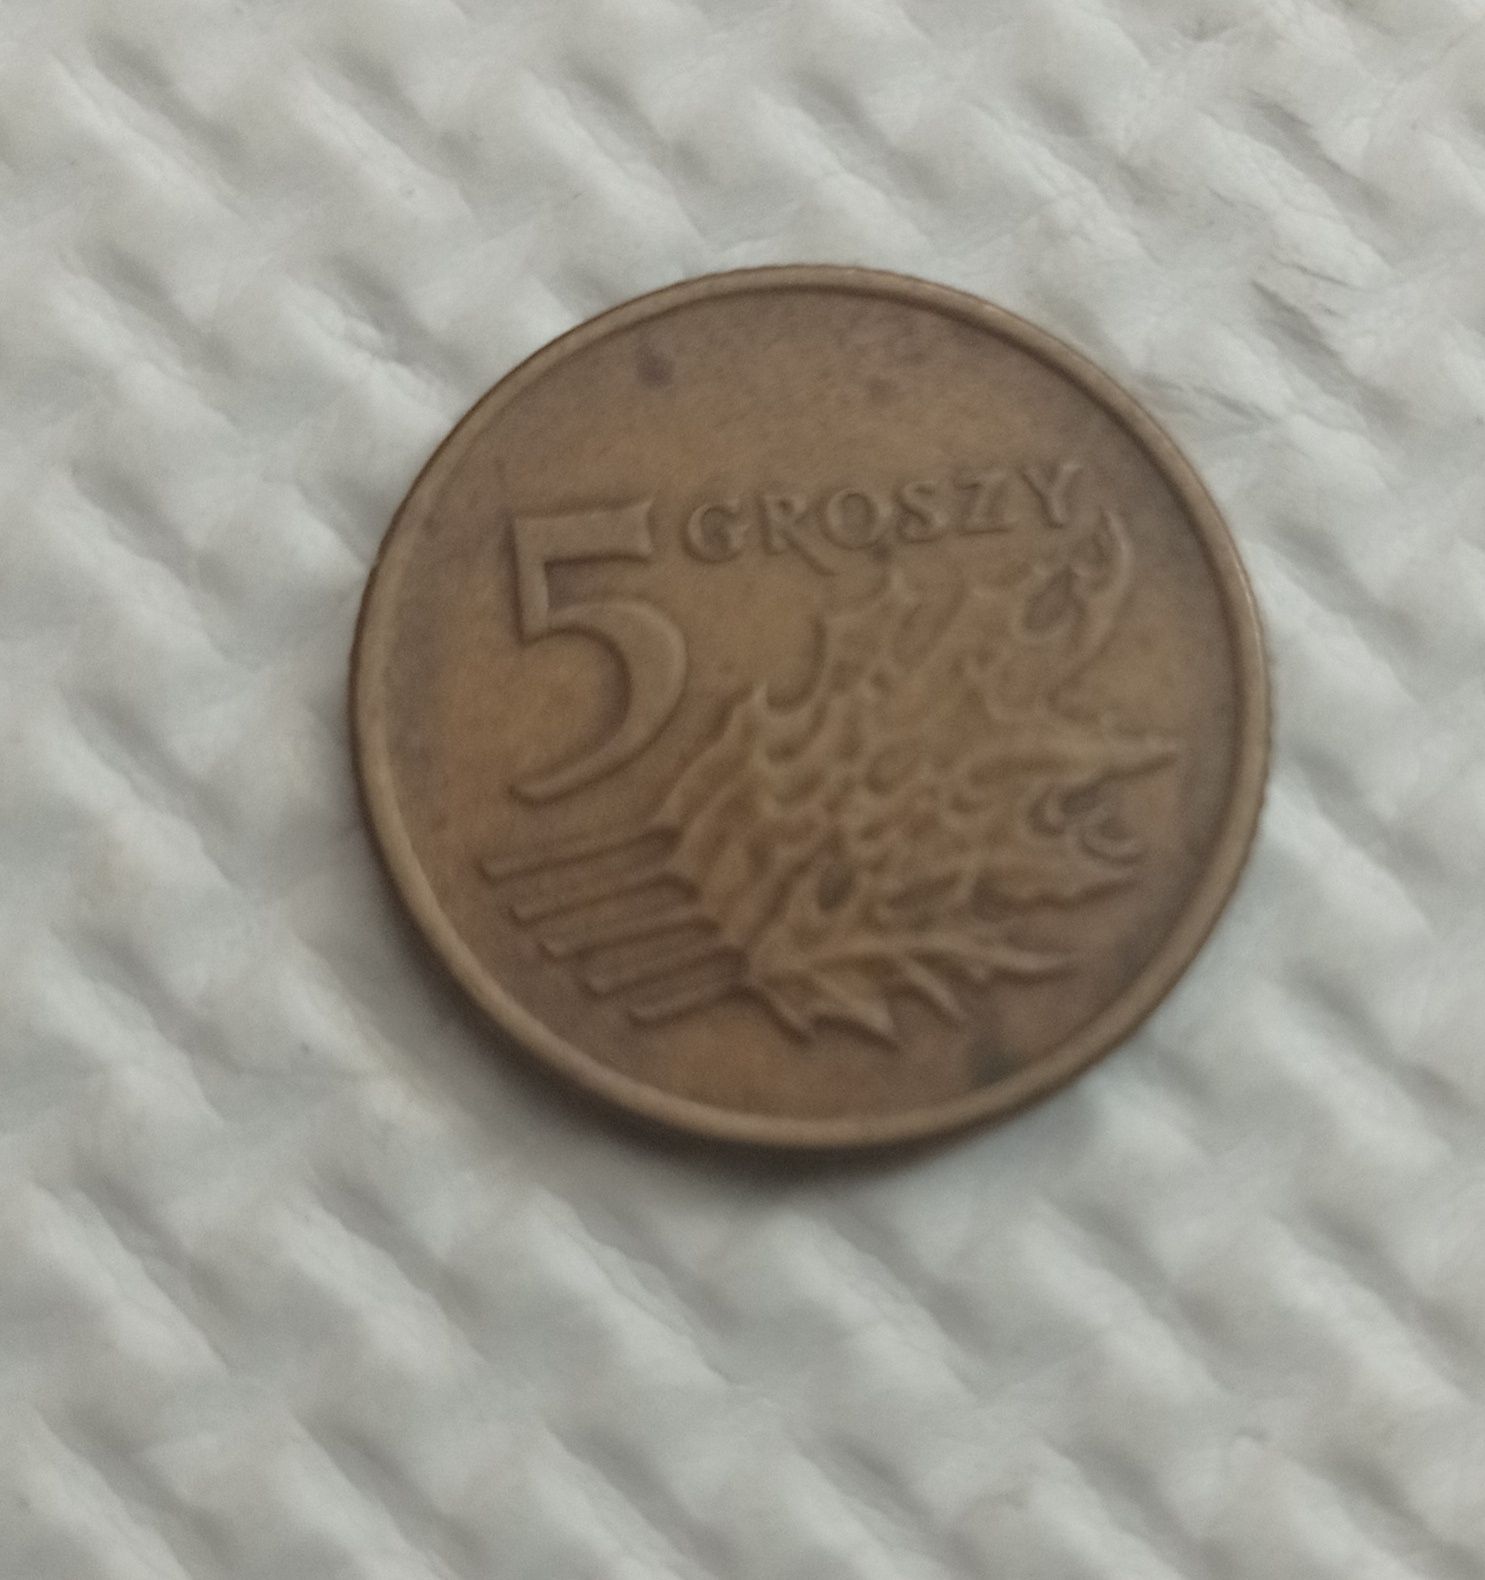 Moneta obiegowa 5 groszy 1990 rok